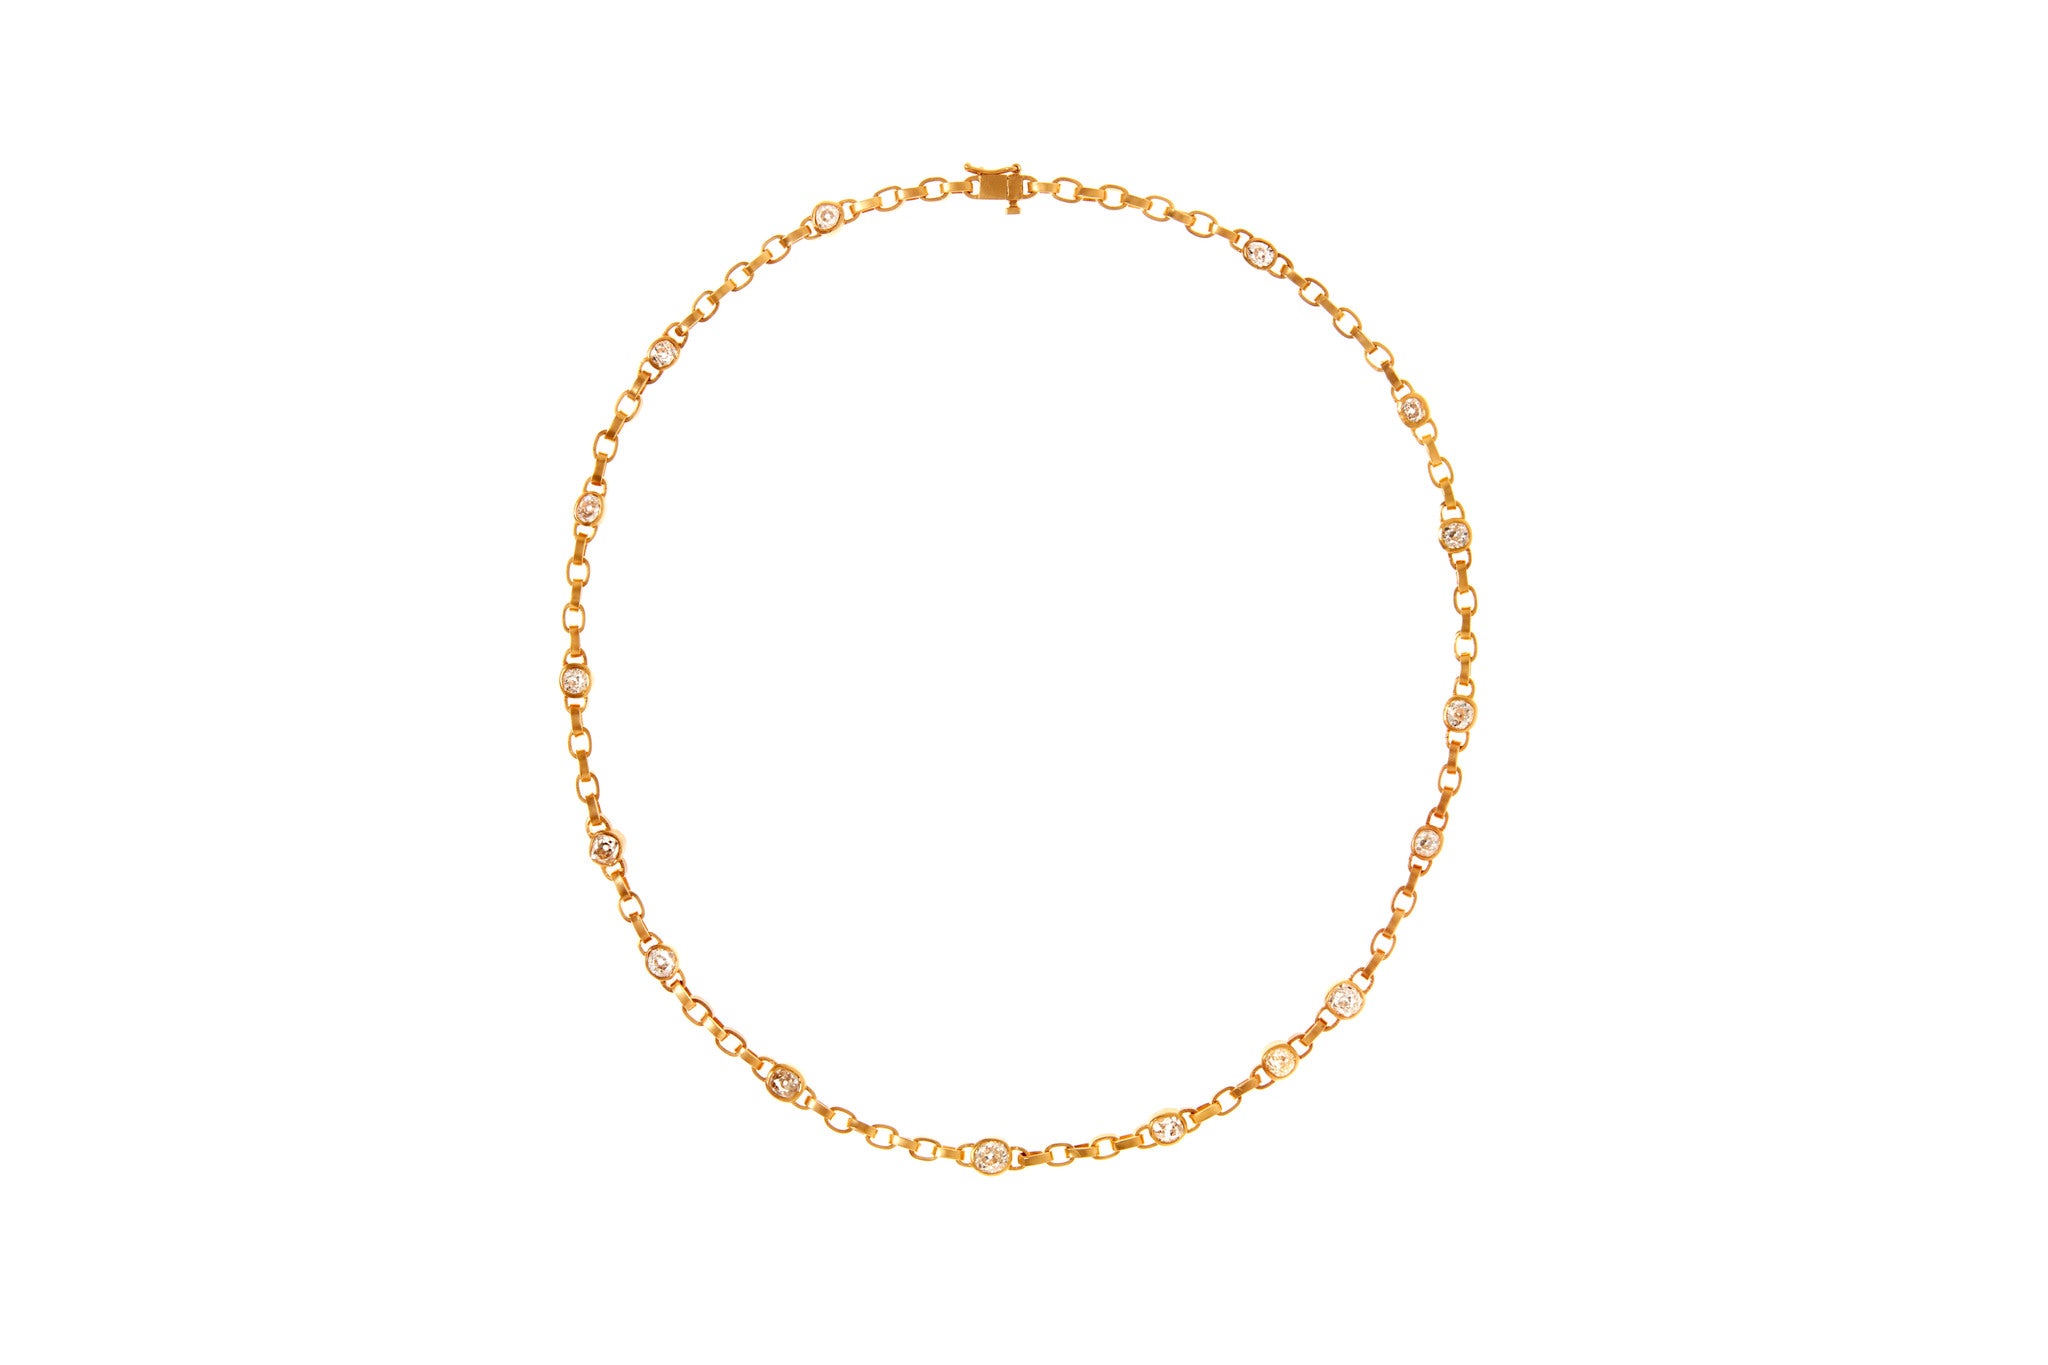 darius jewels diamond signature chain 18k yellow gold hand crafted chain link darius khonsary